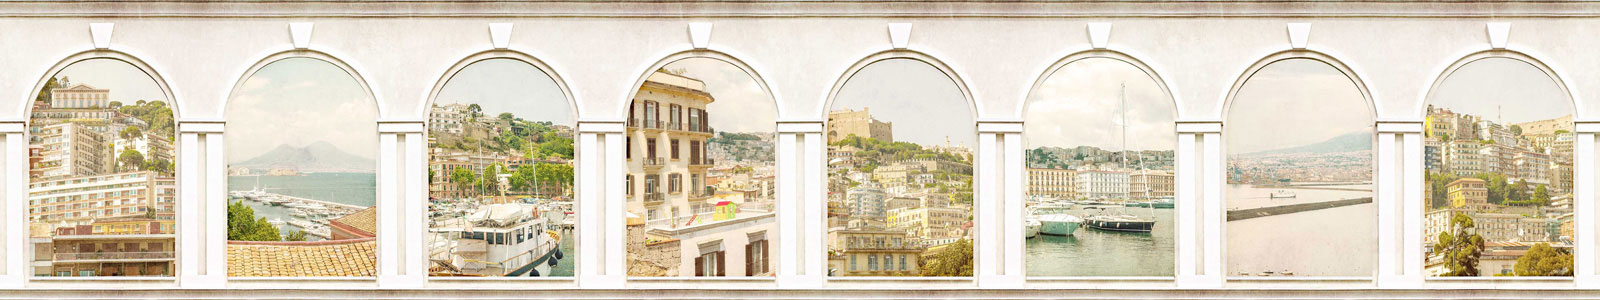 №4285 - Состаренные арки-окна на виды города Неаполь, Италия